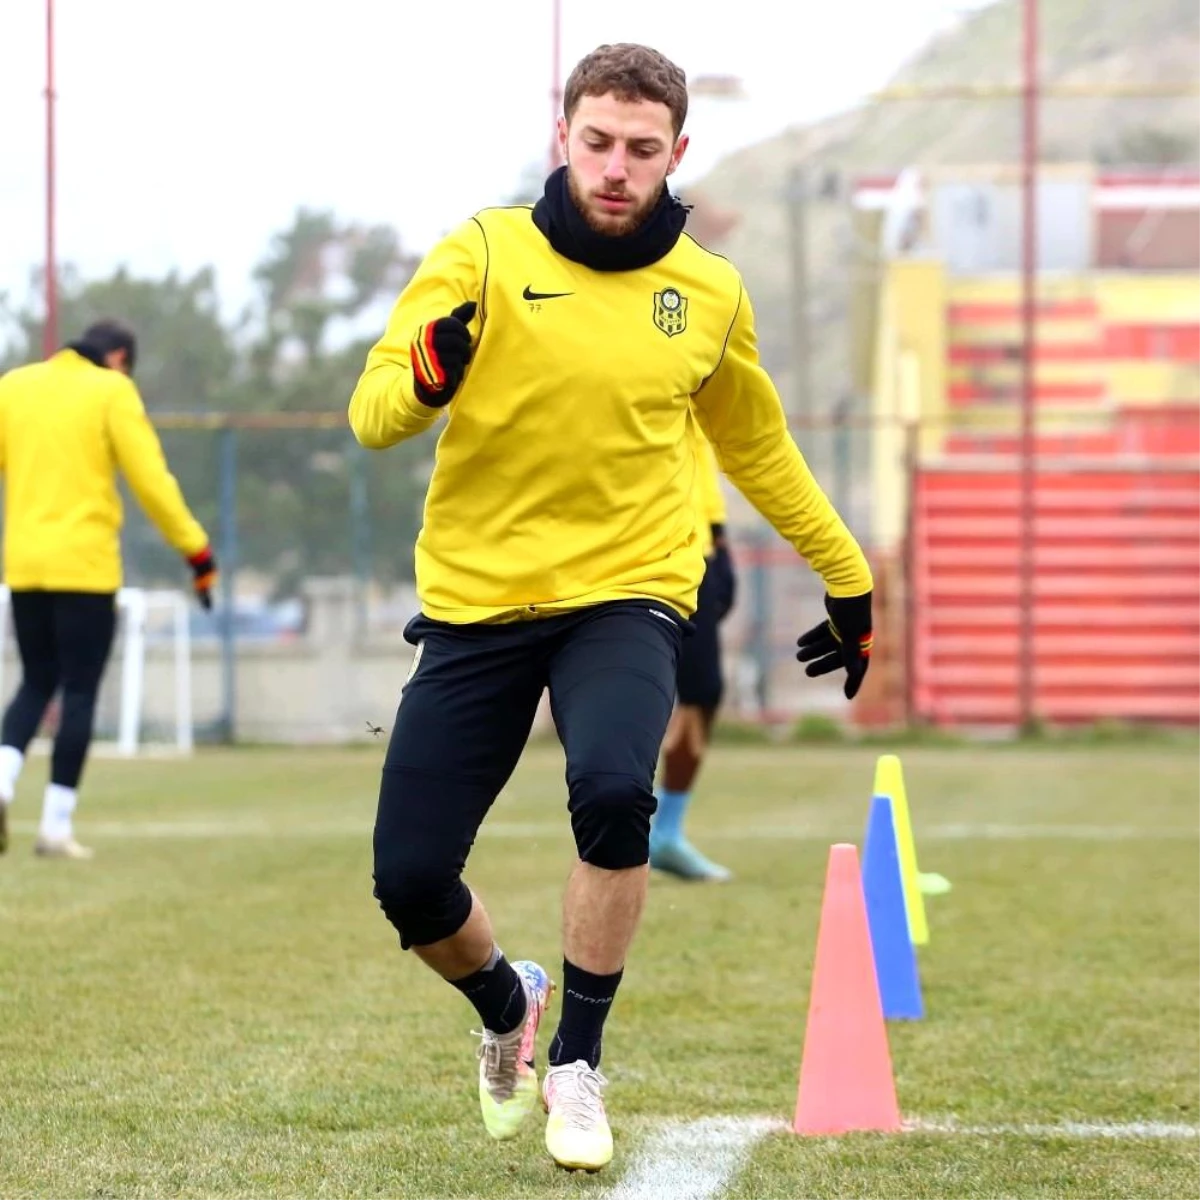 Yeni Malatyasporlu Mustafa Eskihellaç, transferin gözdesi oldu